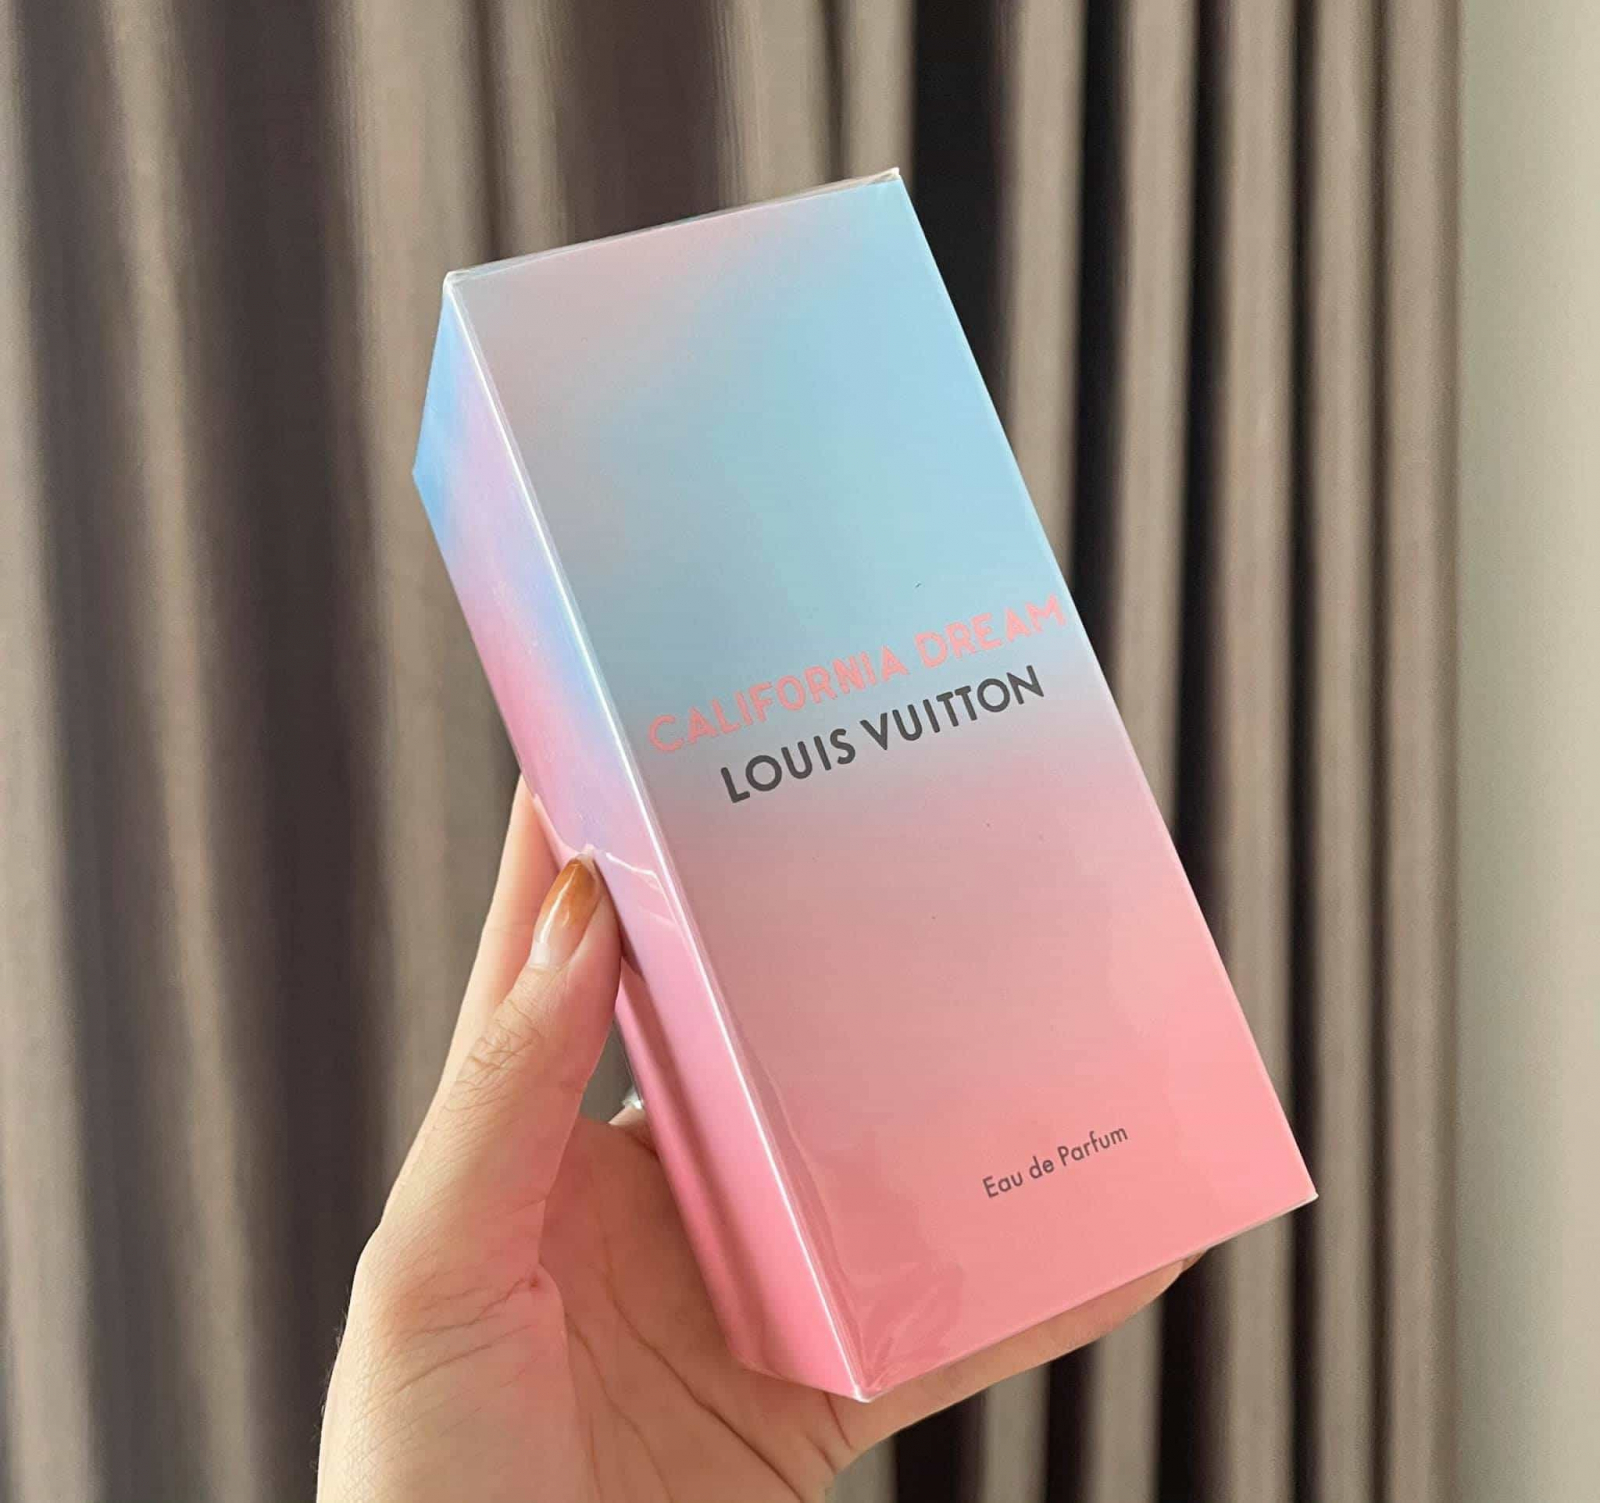 Louis Vuitton debuts Cruise collection in California  LVMH